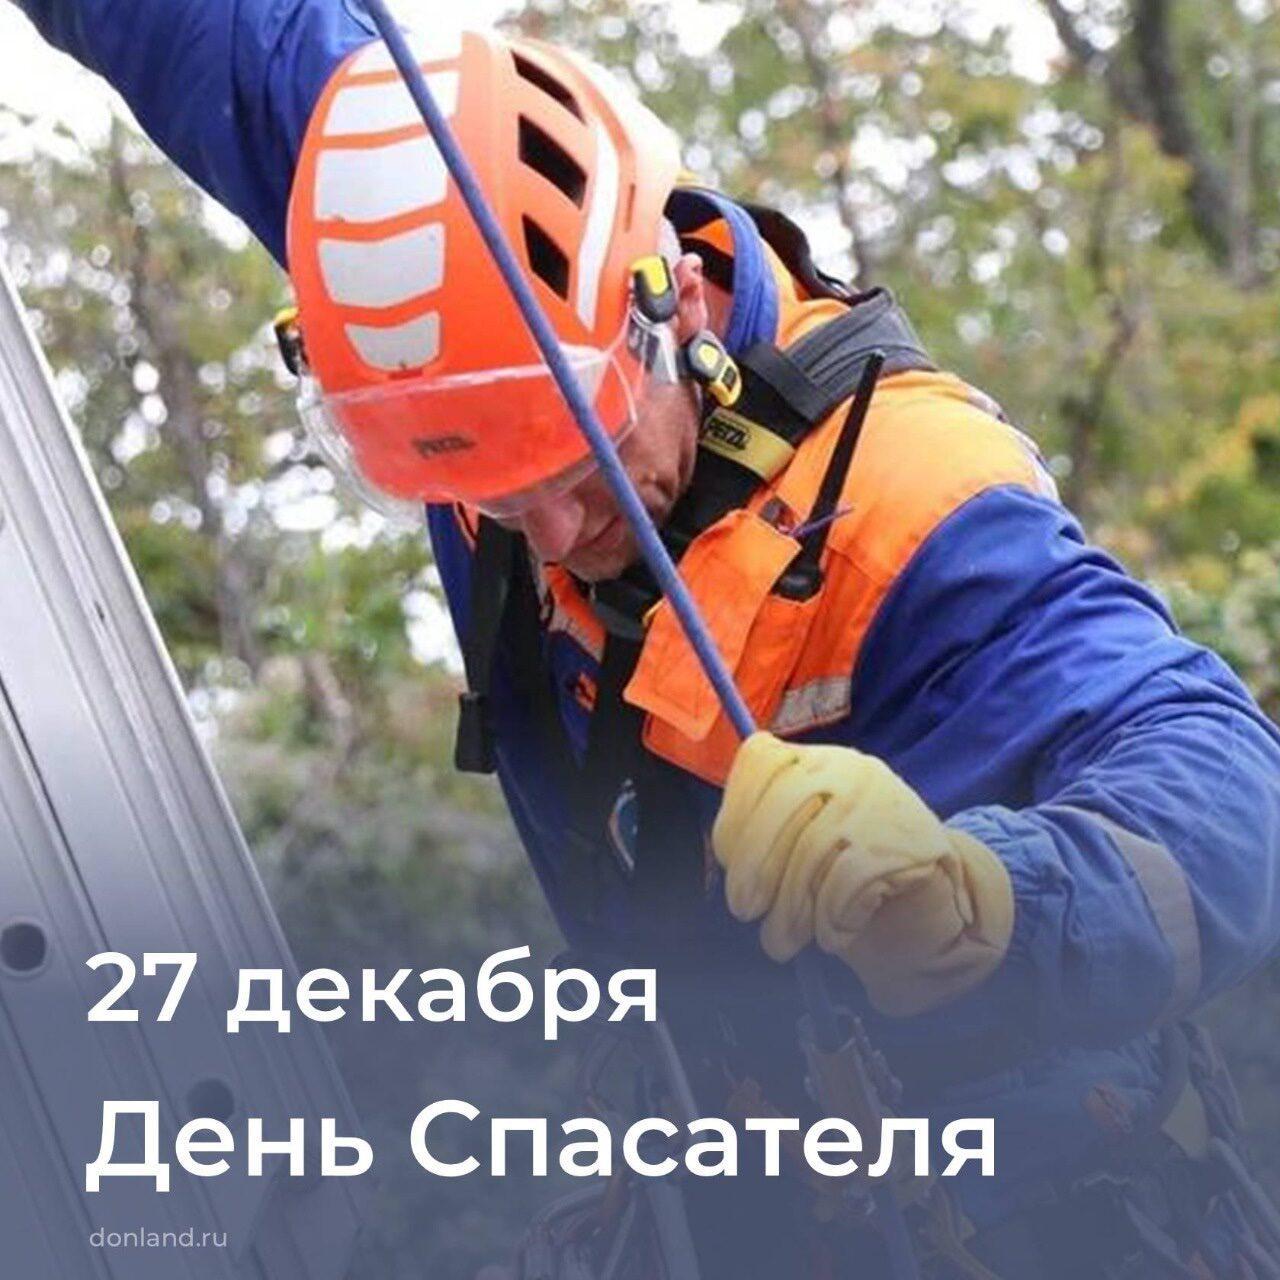 Уважаемые спасатели и ветераны службы спасения Орловского района!